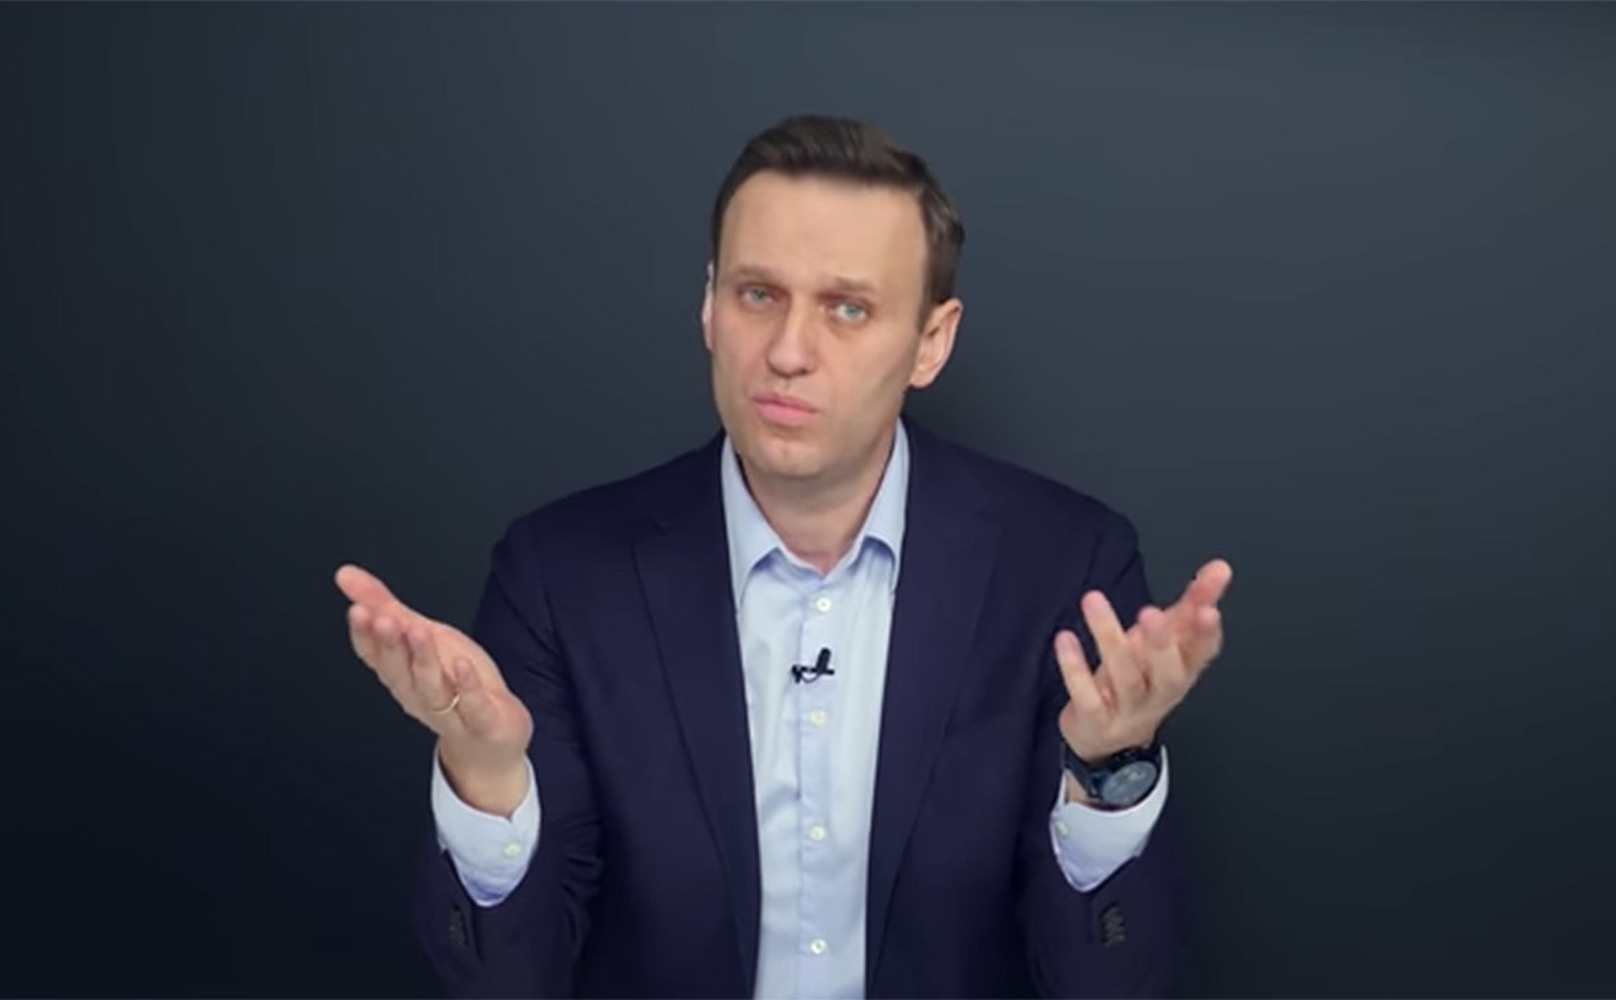 Ютуб новости политики свежие. Навальный фото. Навальный 1920 1080.